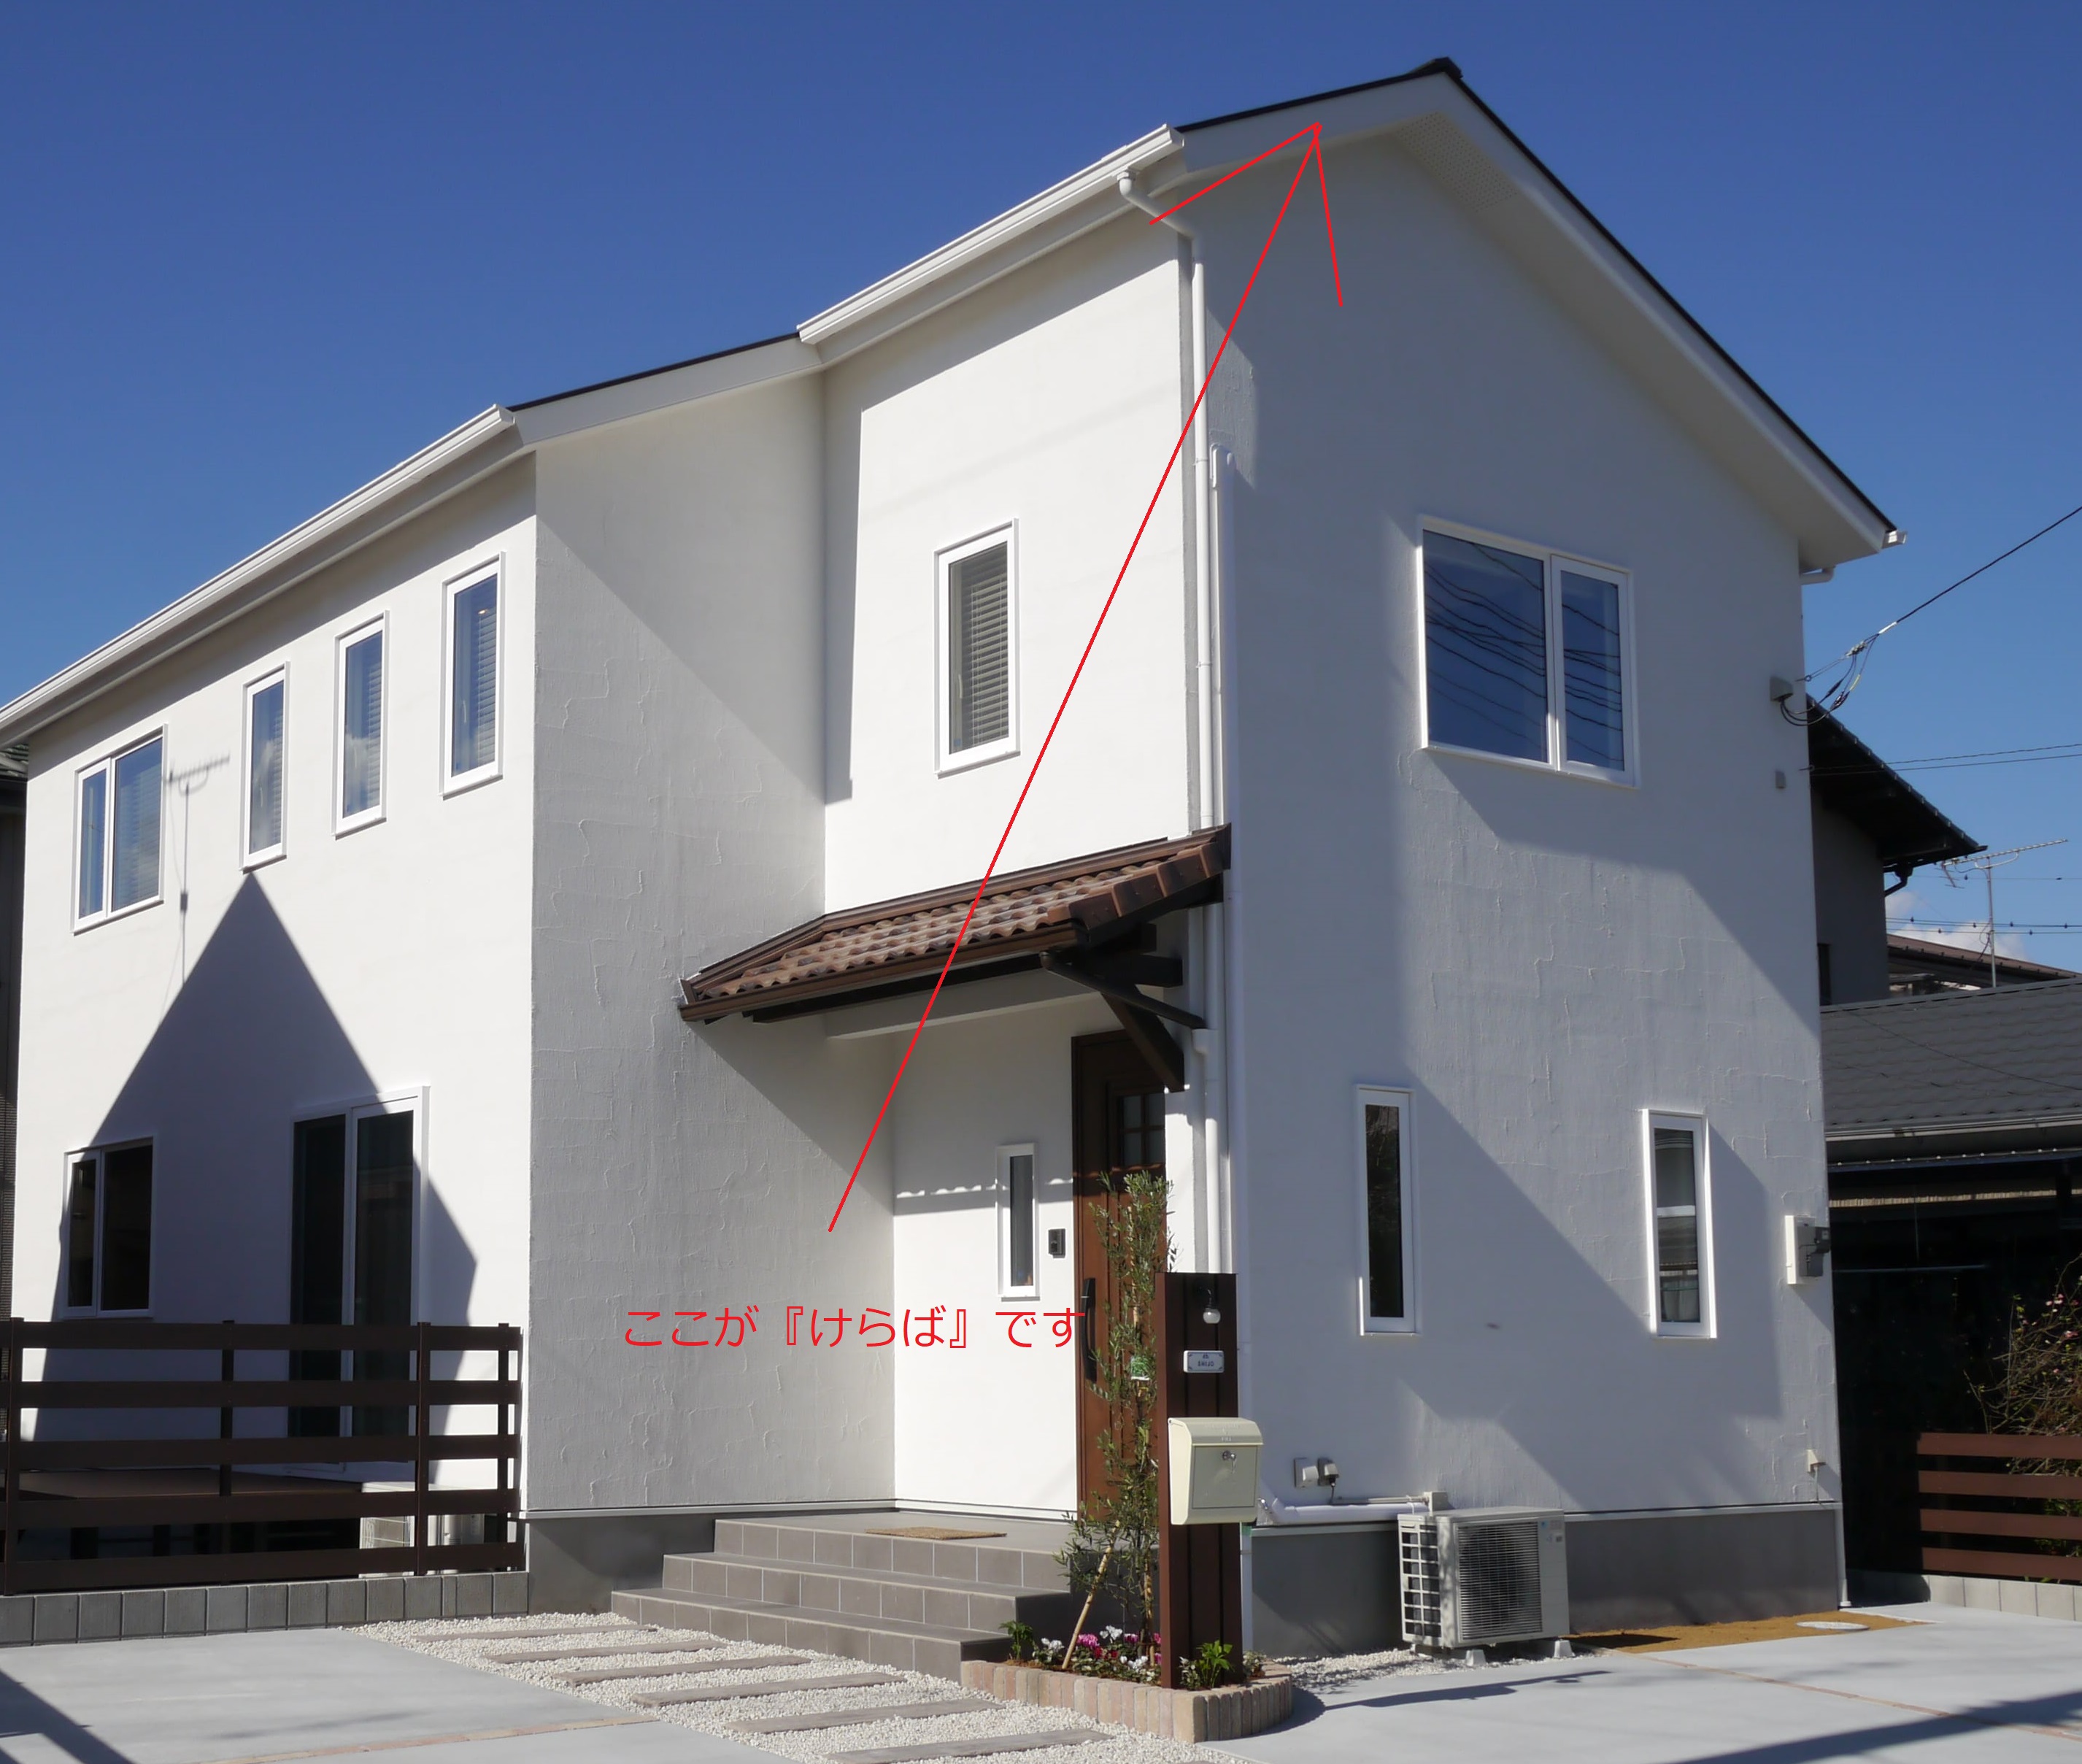 建築用語クイズ 静岡県静岡市の工務店sanki Haus サンキハウス